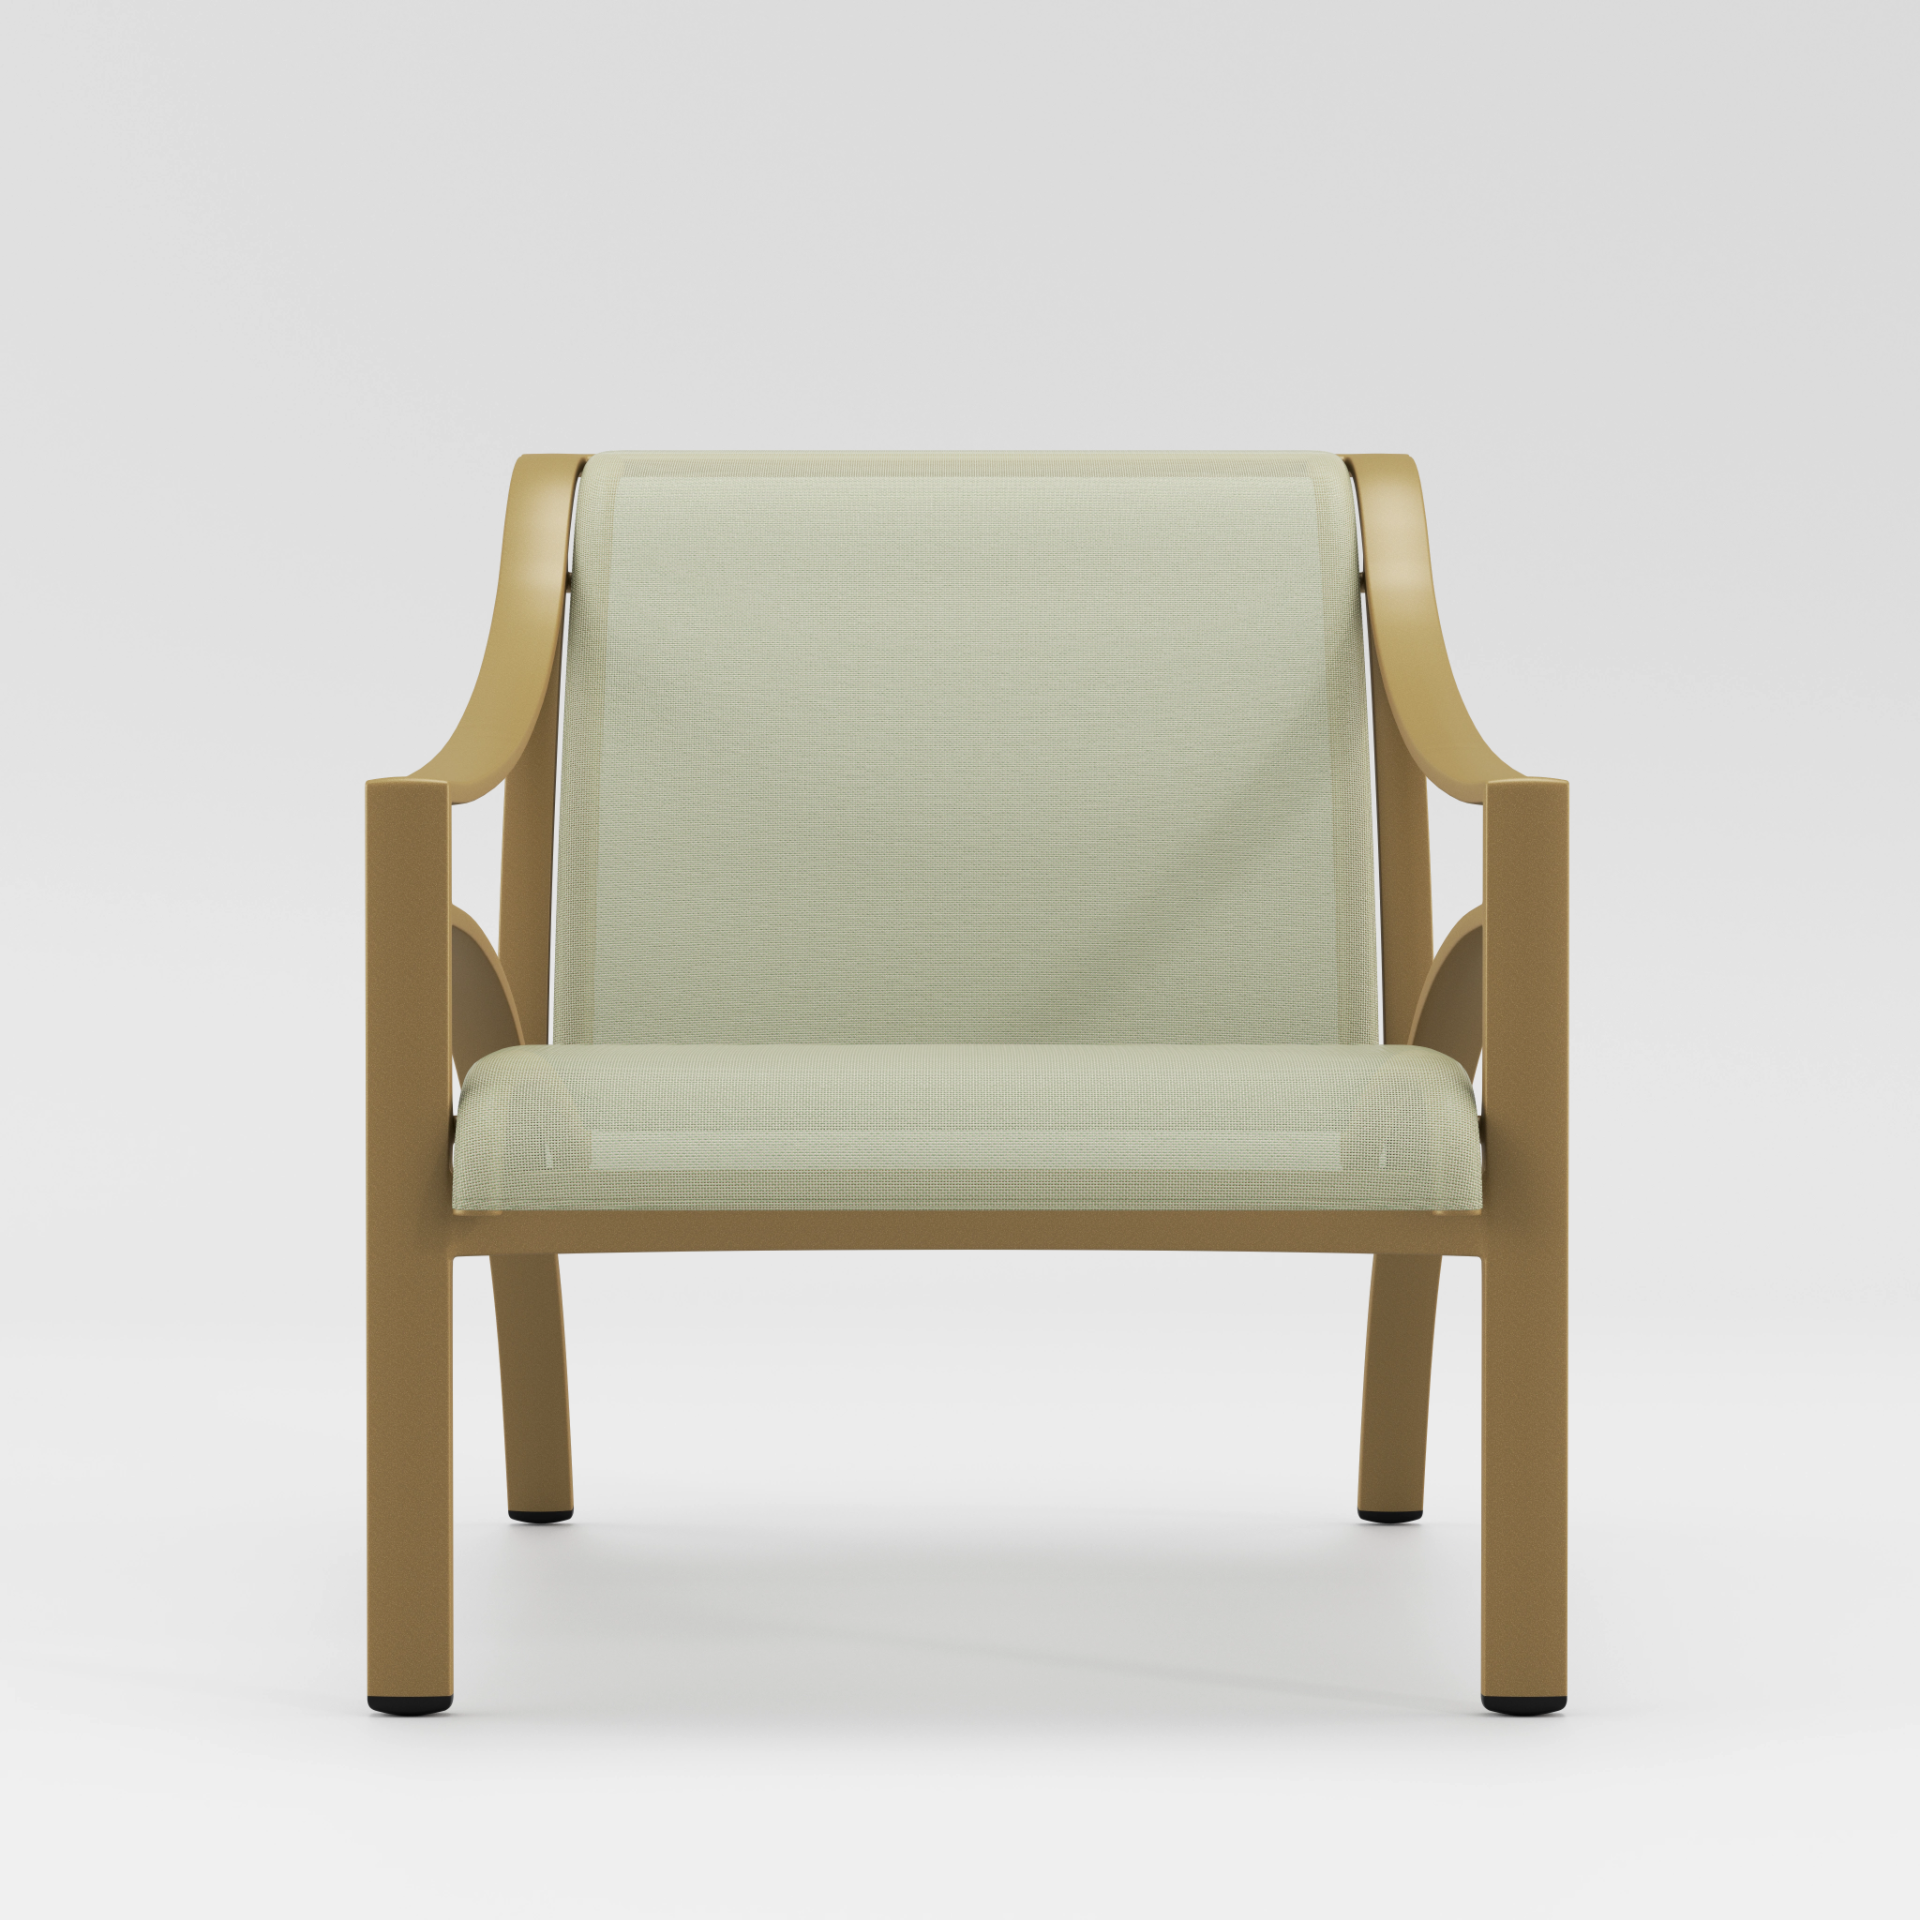 Pasadena Sling Lounge Chair by Brown Jordan